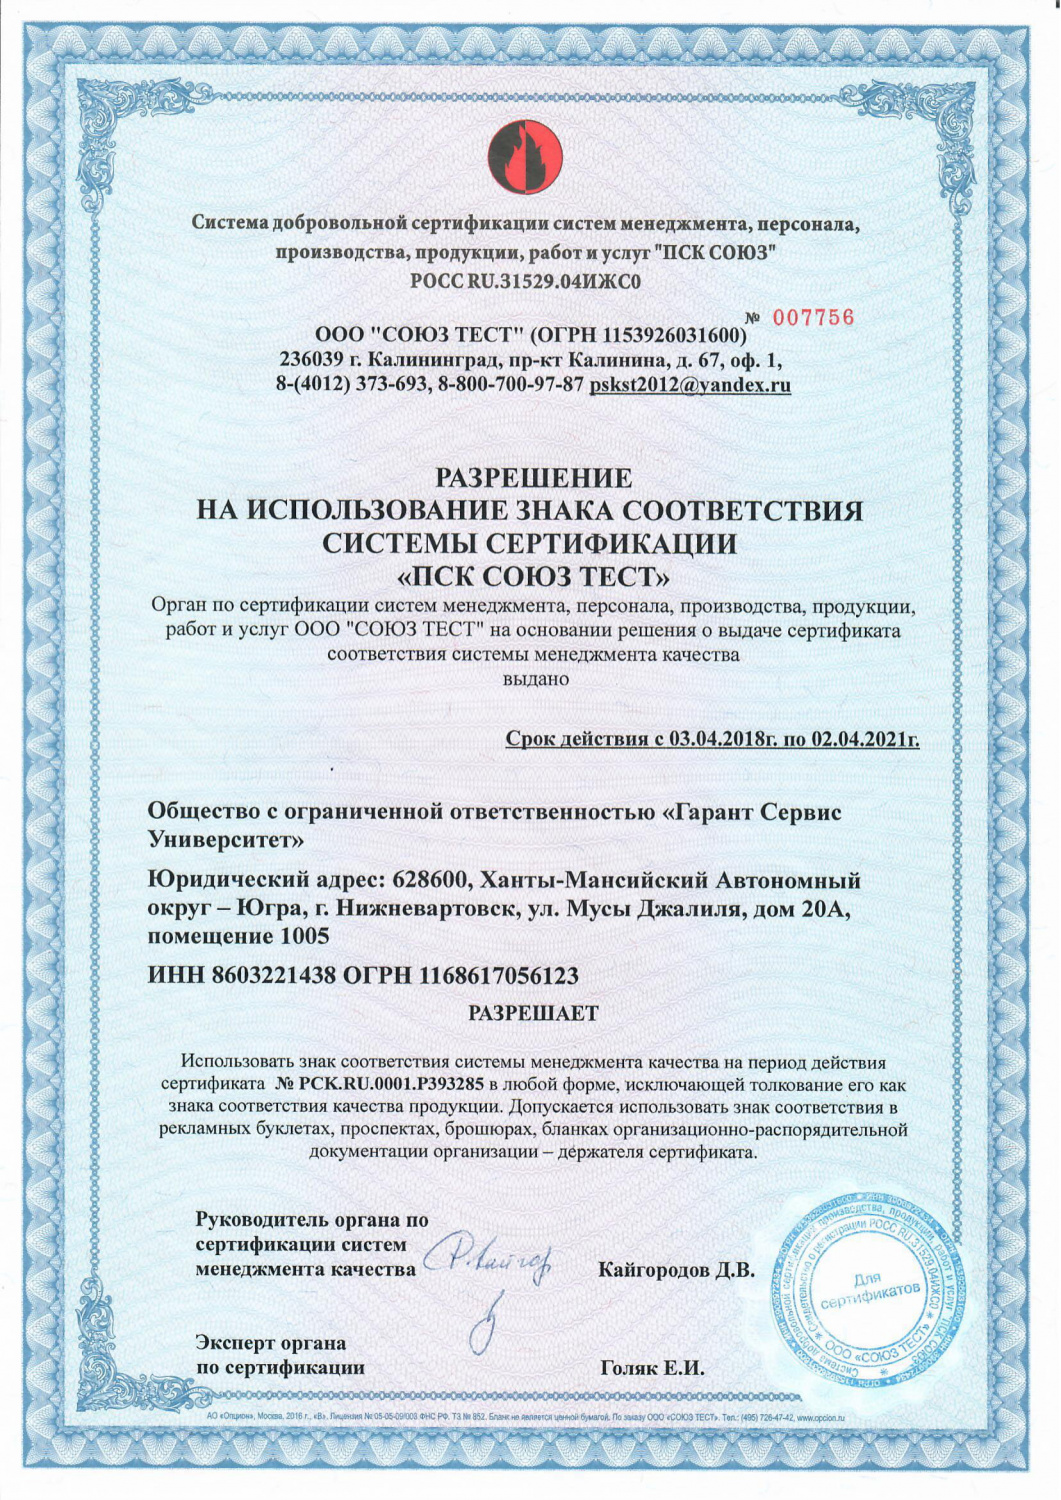 Разрешение на использование знака соответствия системы сертификации "ПСК СОЮЗ ТЕСТ"